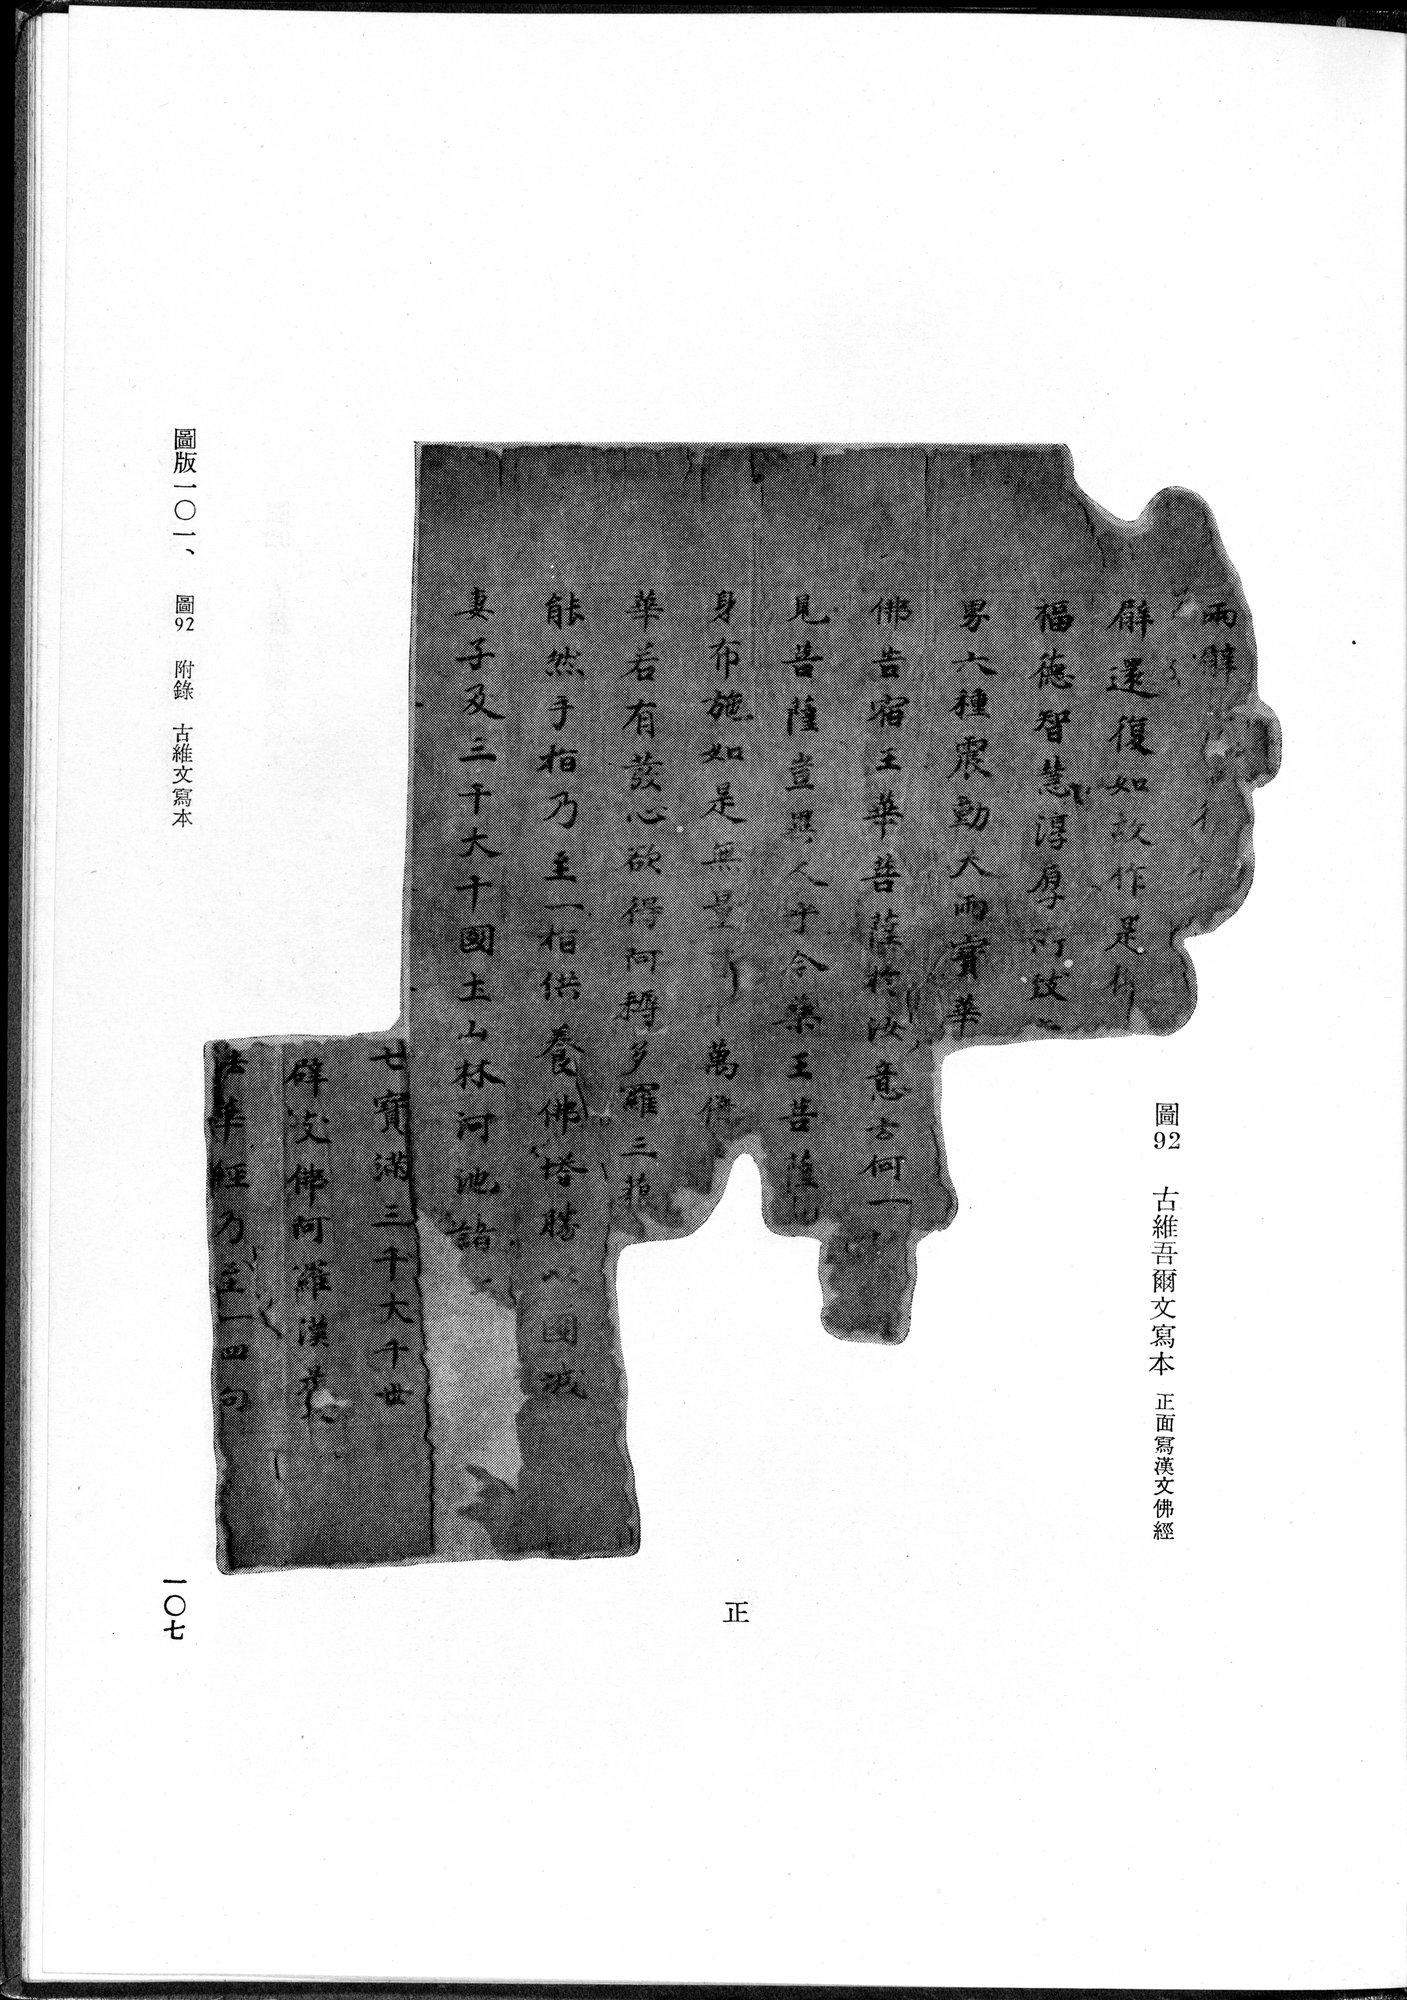 吐魯番考古記 : vol.1 / Page 217 (Grayscale High Resolution Image)